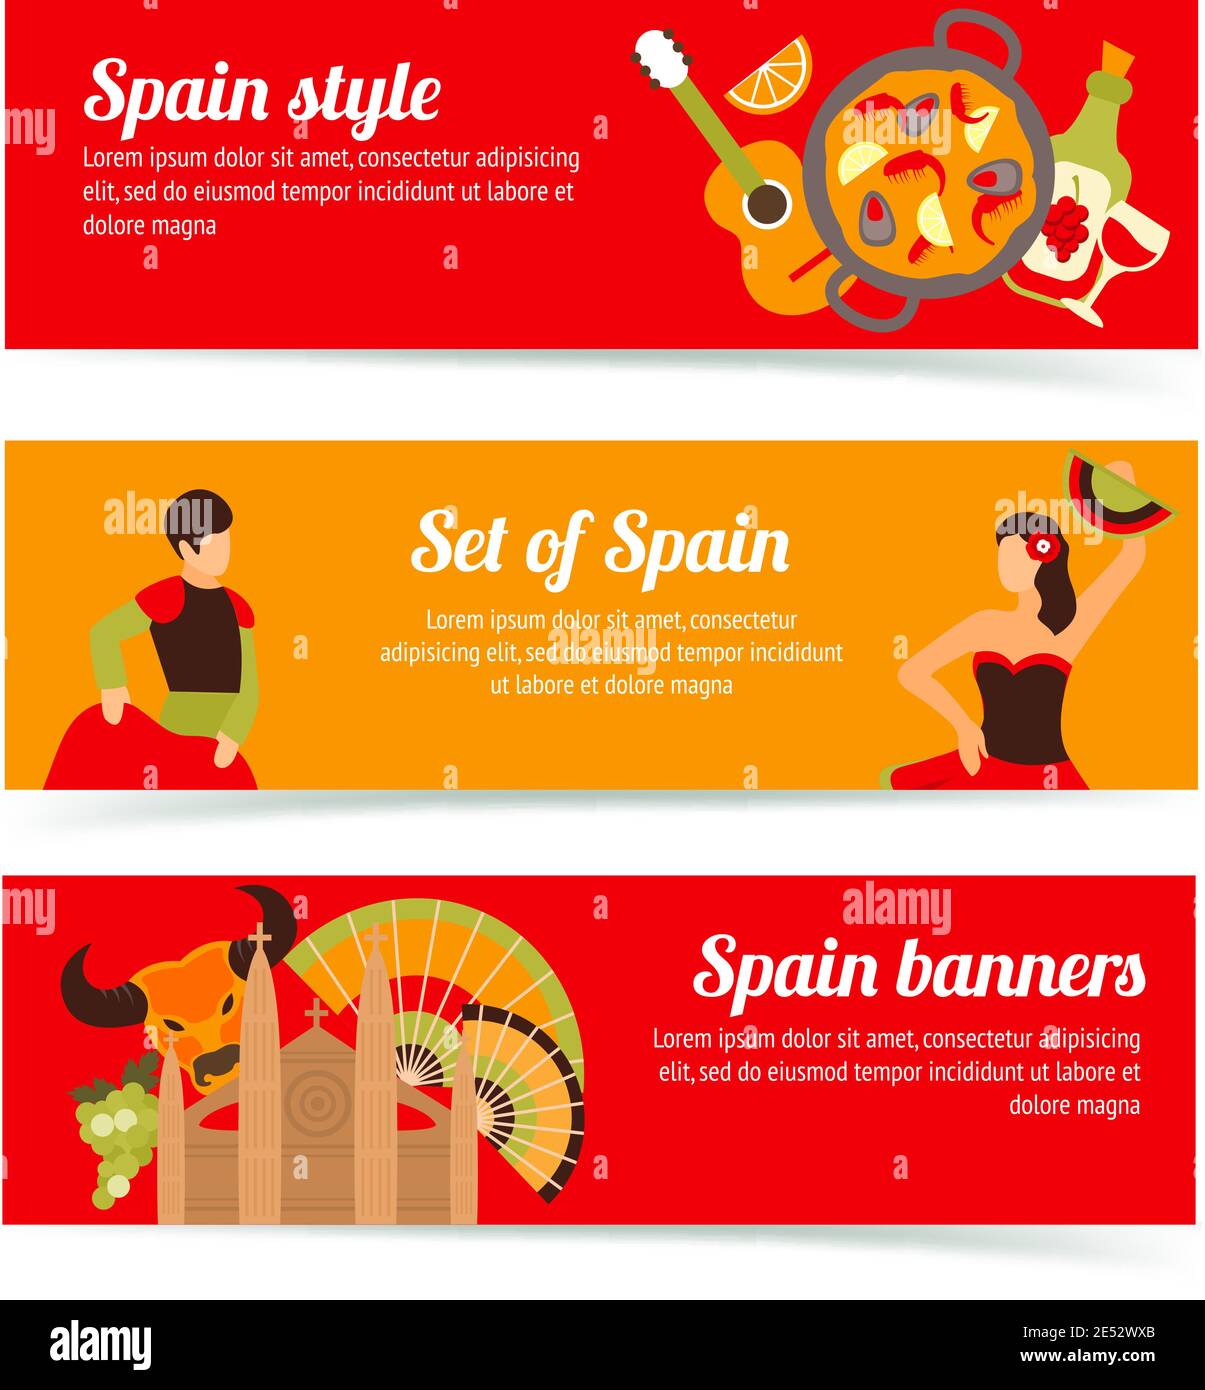 Espagne voyage de style espagnol culture vin banderoles flamenco ensemble isolé illustration vectorielle Illustration de Vecteur